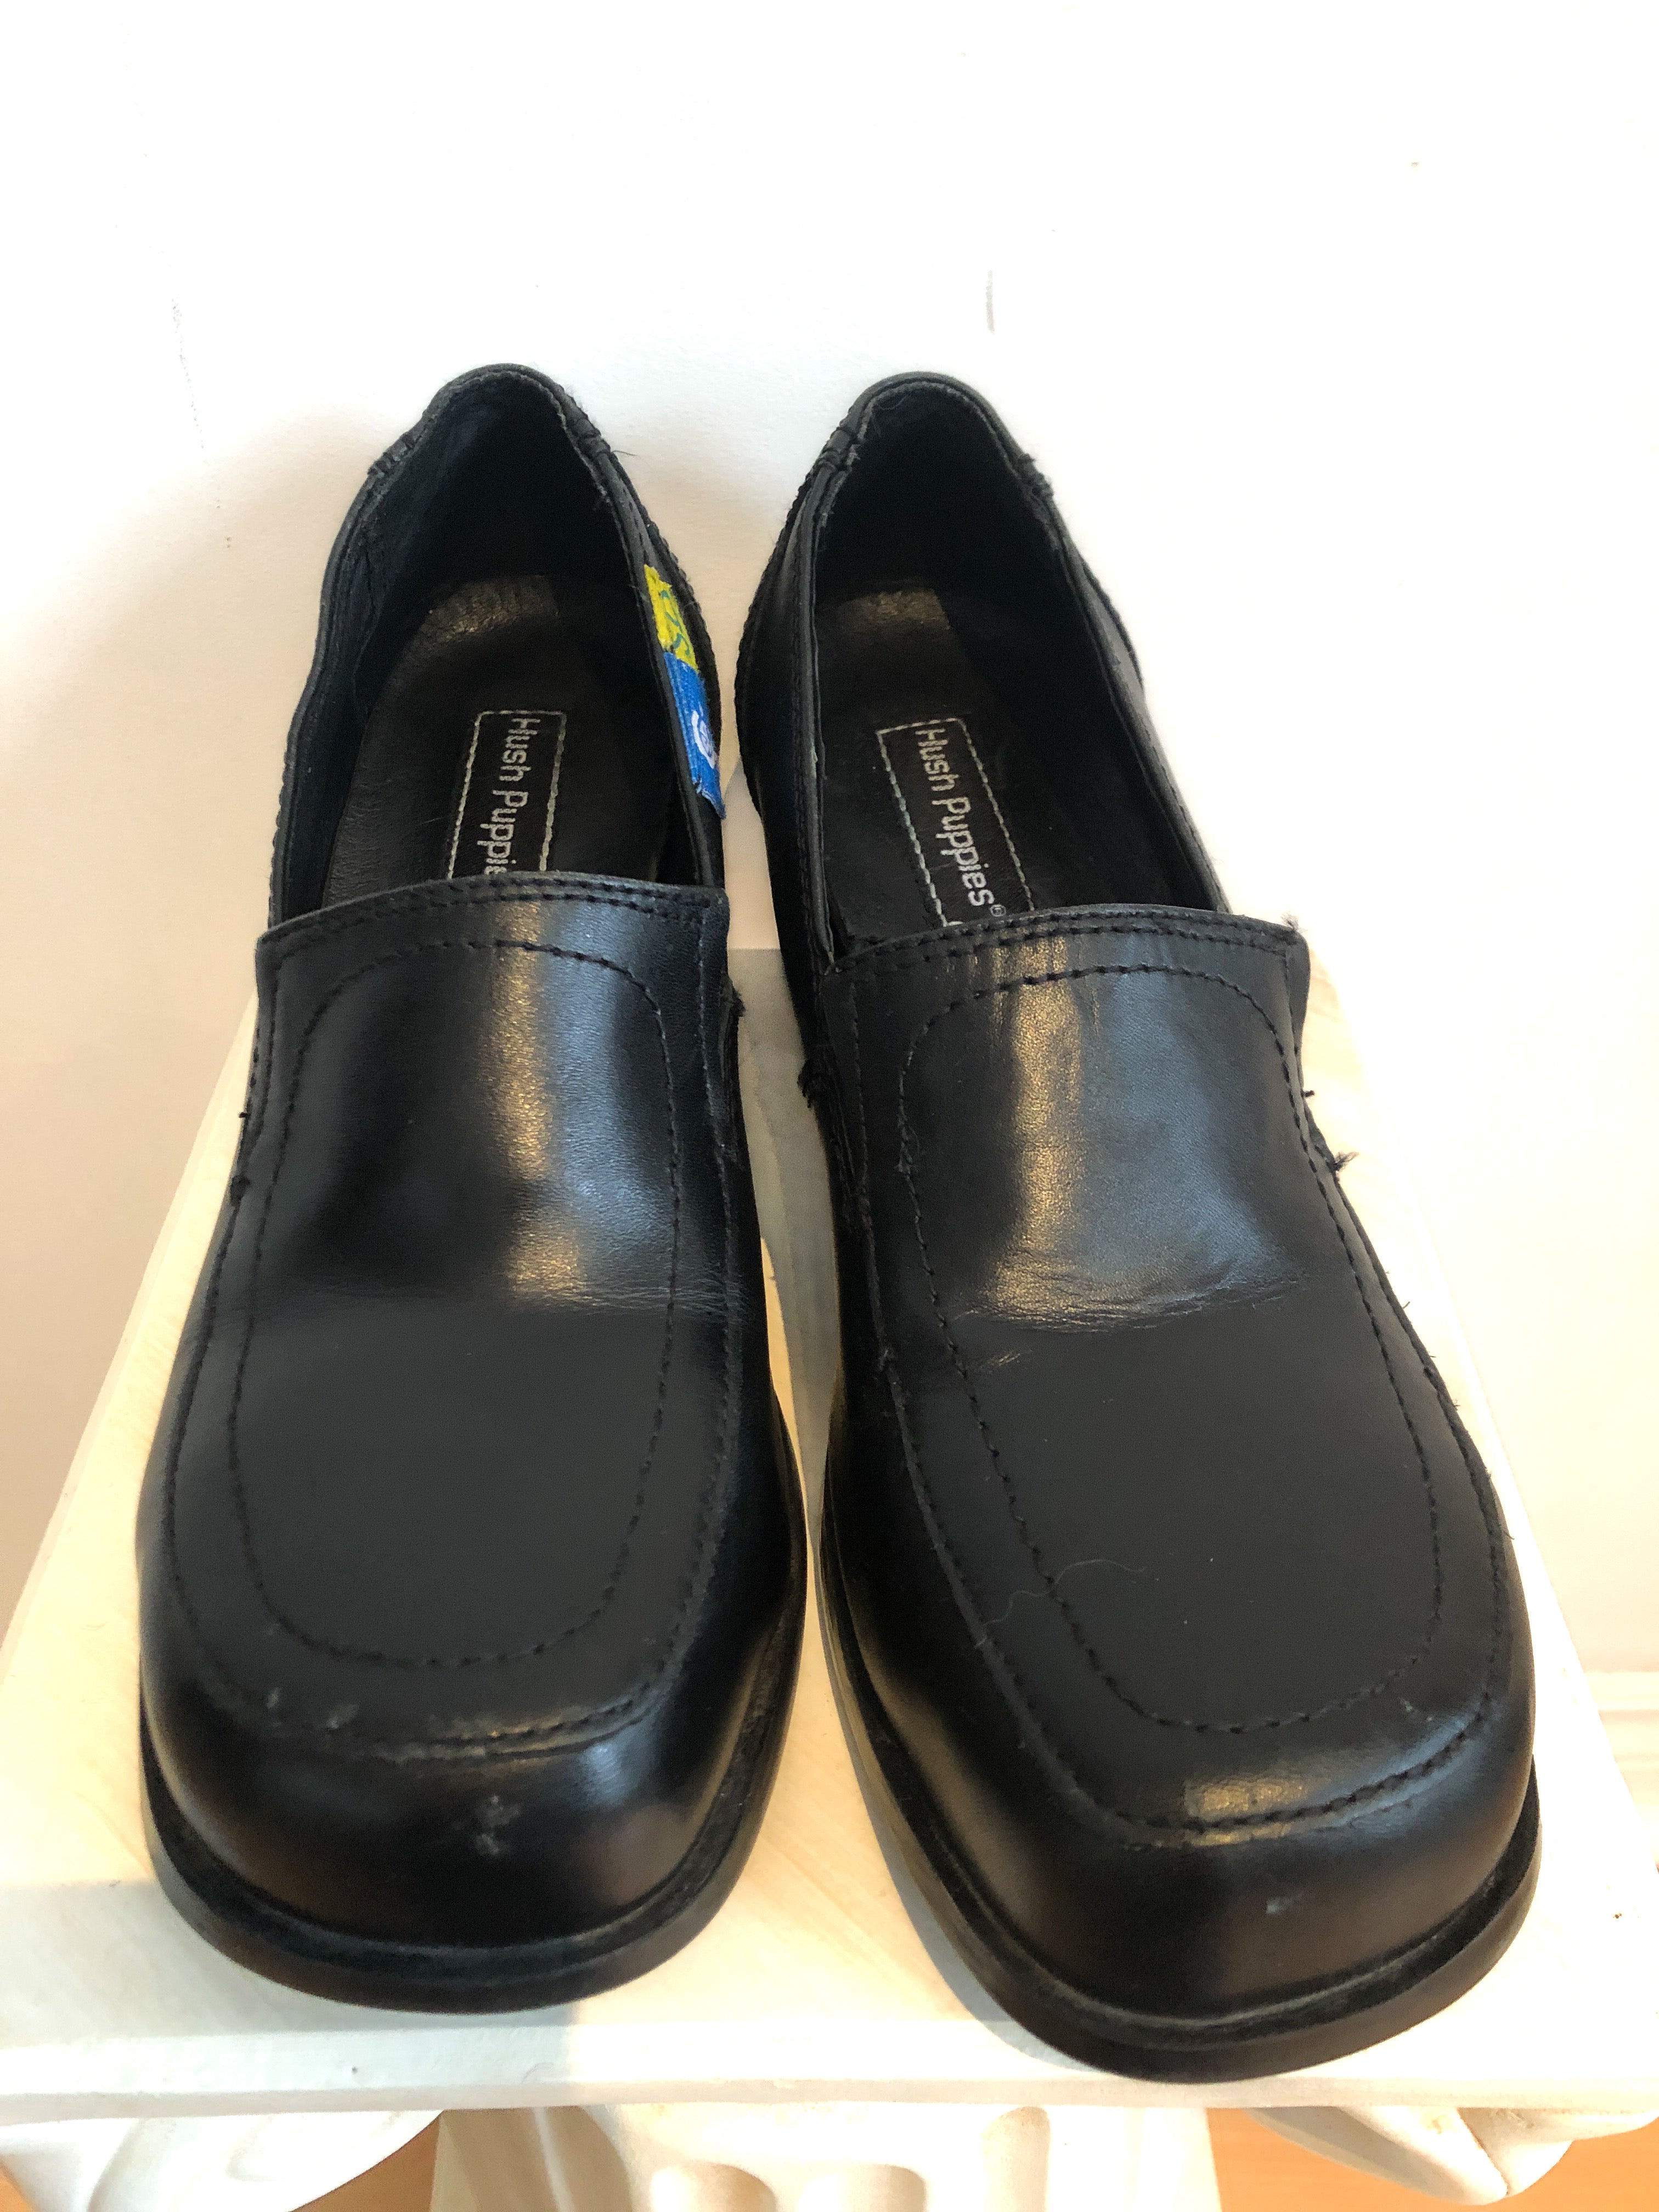 Buy Hush Puppies mens AARON DERBY Black Uniform Dress Shoe - 6 UK (8246872)  at Amazon.in